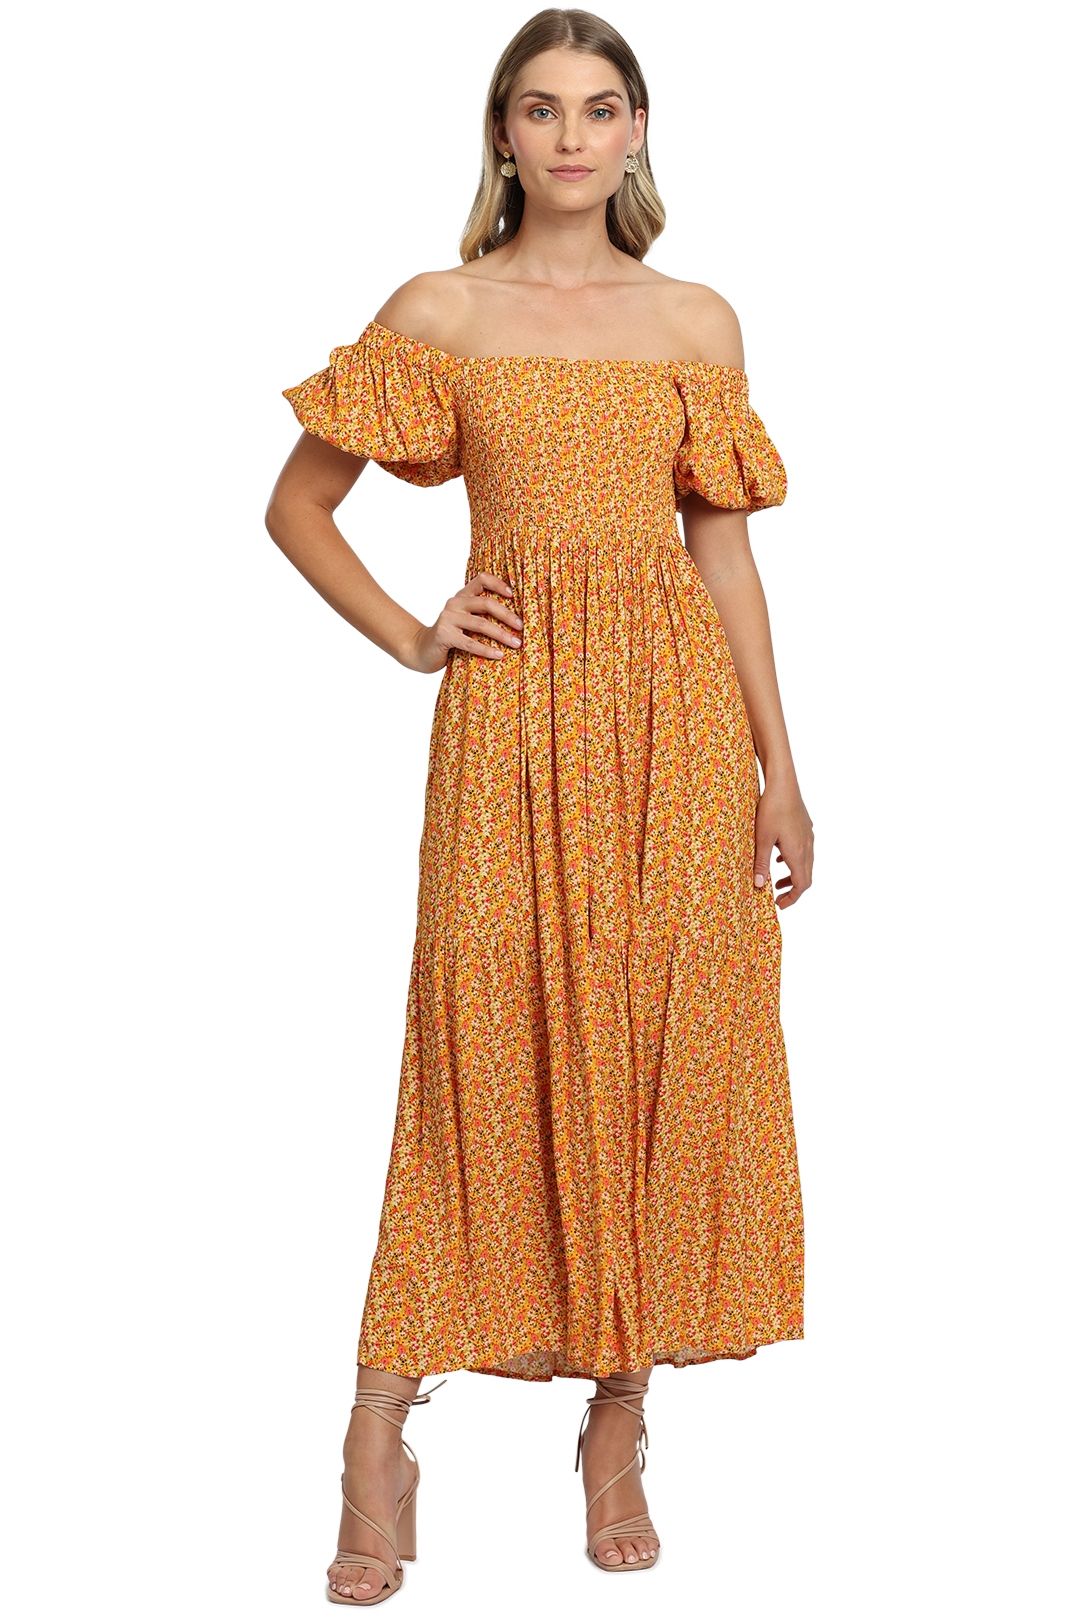 Suzie Dress in Saffron midi